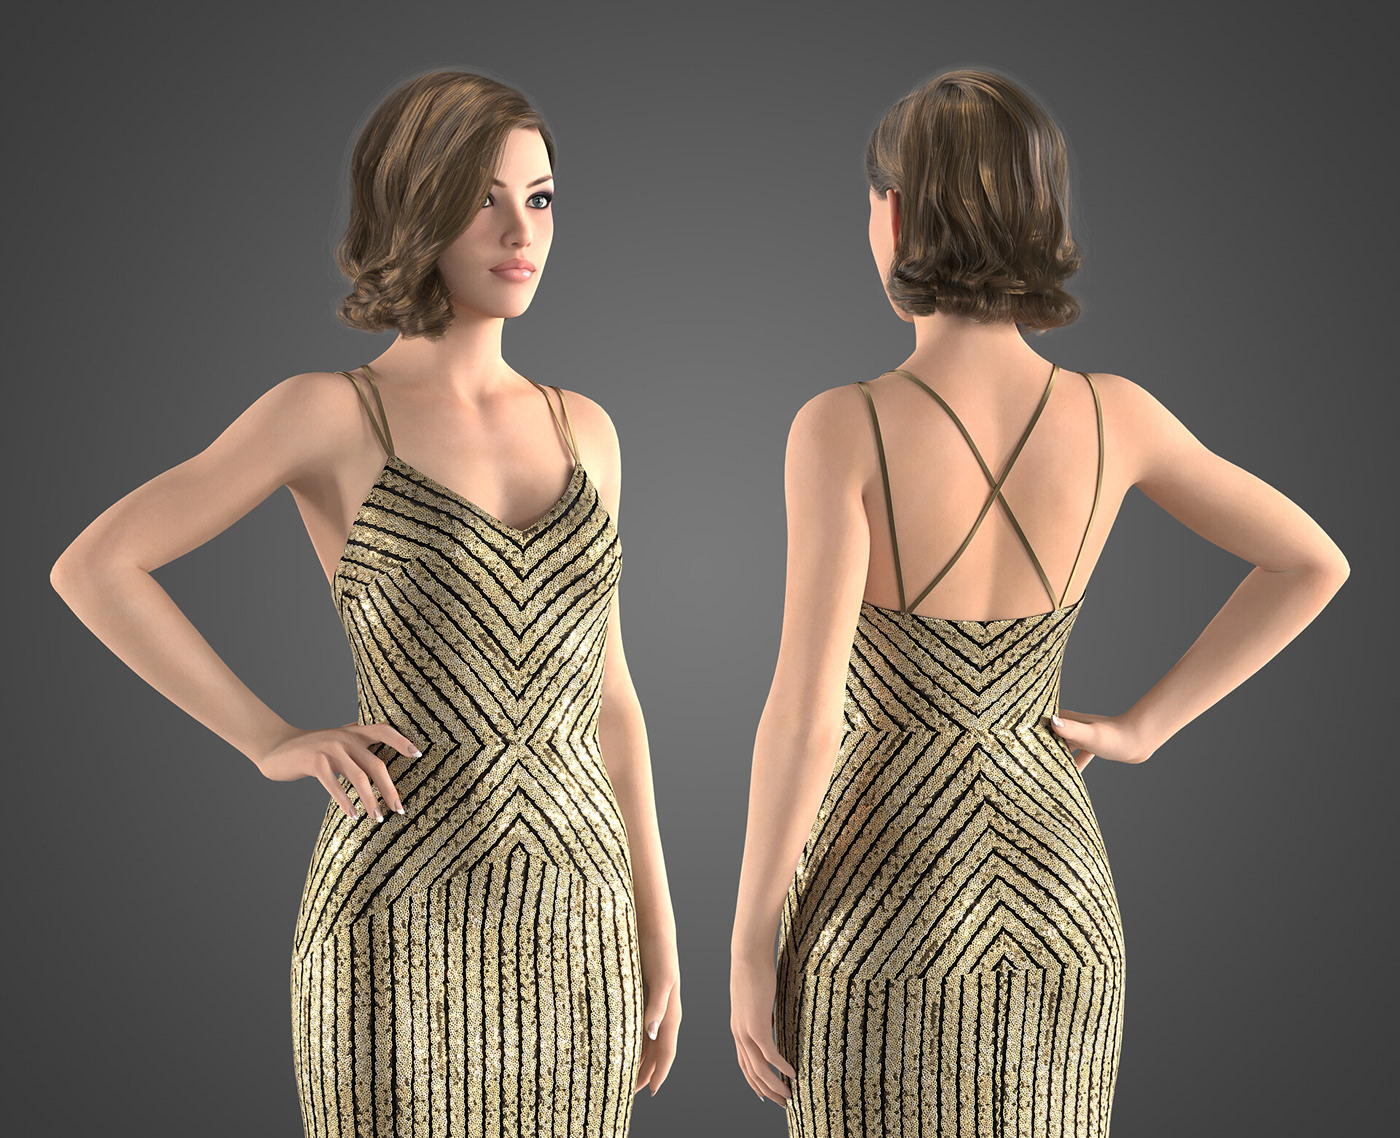 Clothing Fashion  3dfashion Clo3d 3D Render 3ds max fashiondesign fashionillustration fashionillustrator